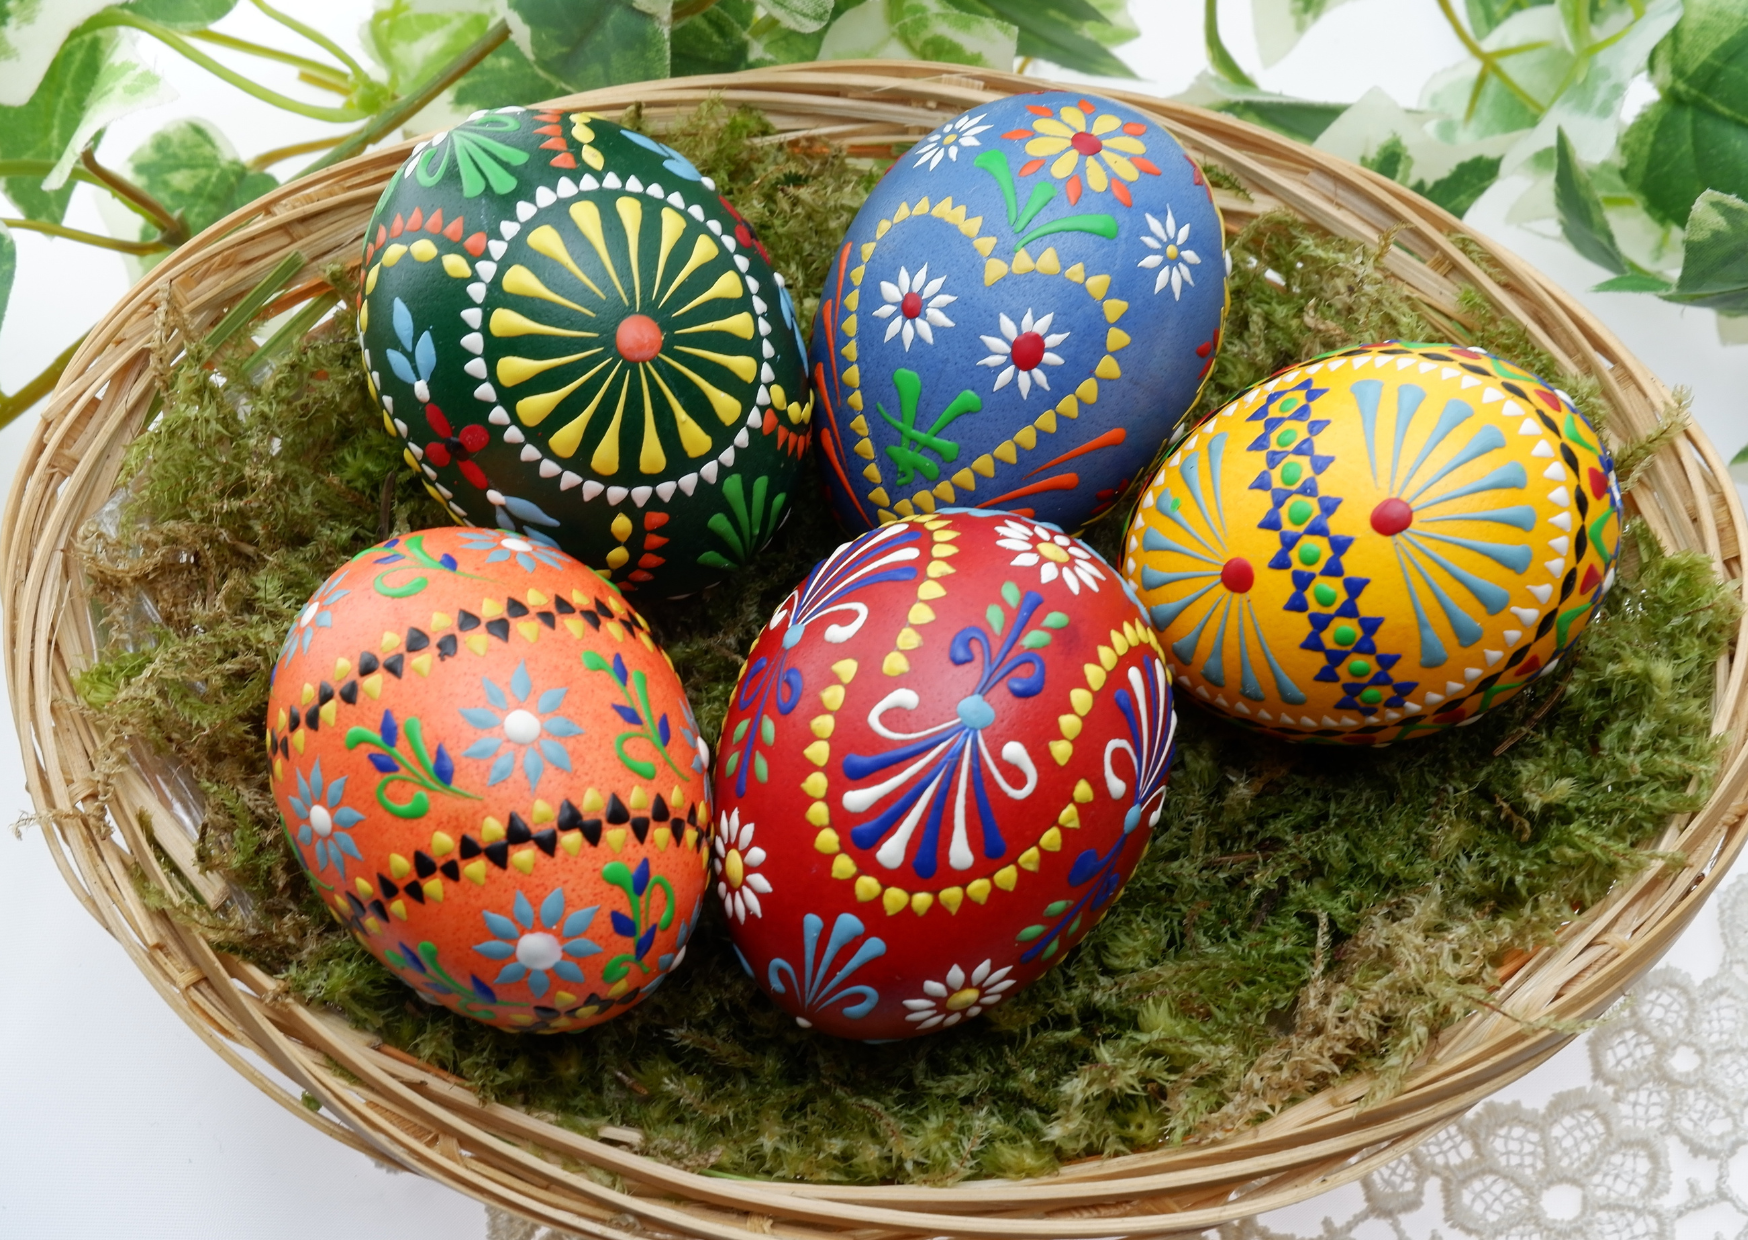 Velikonoce jsou tu! Připomeňte si lidové zvyky a význam jednotlivých dnů. 